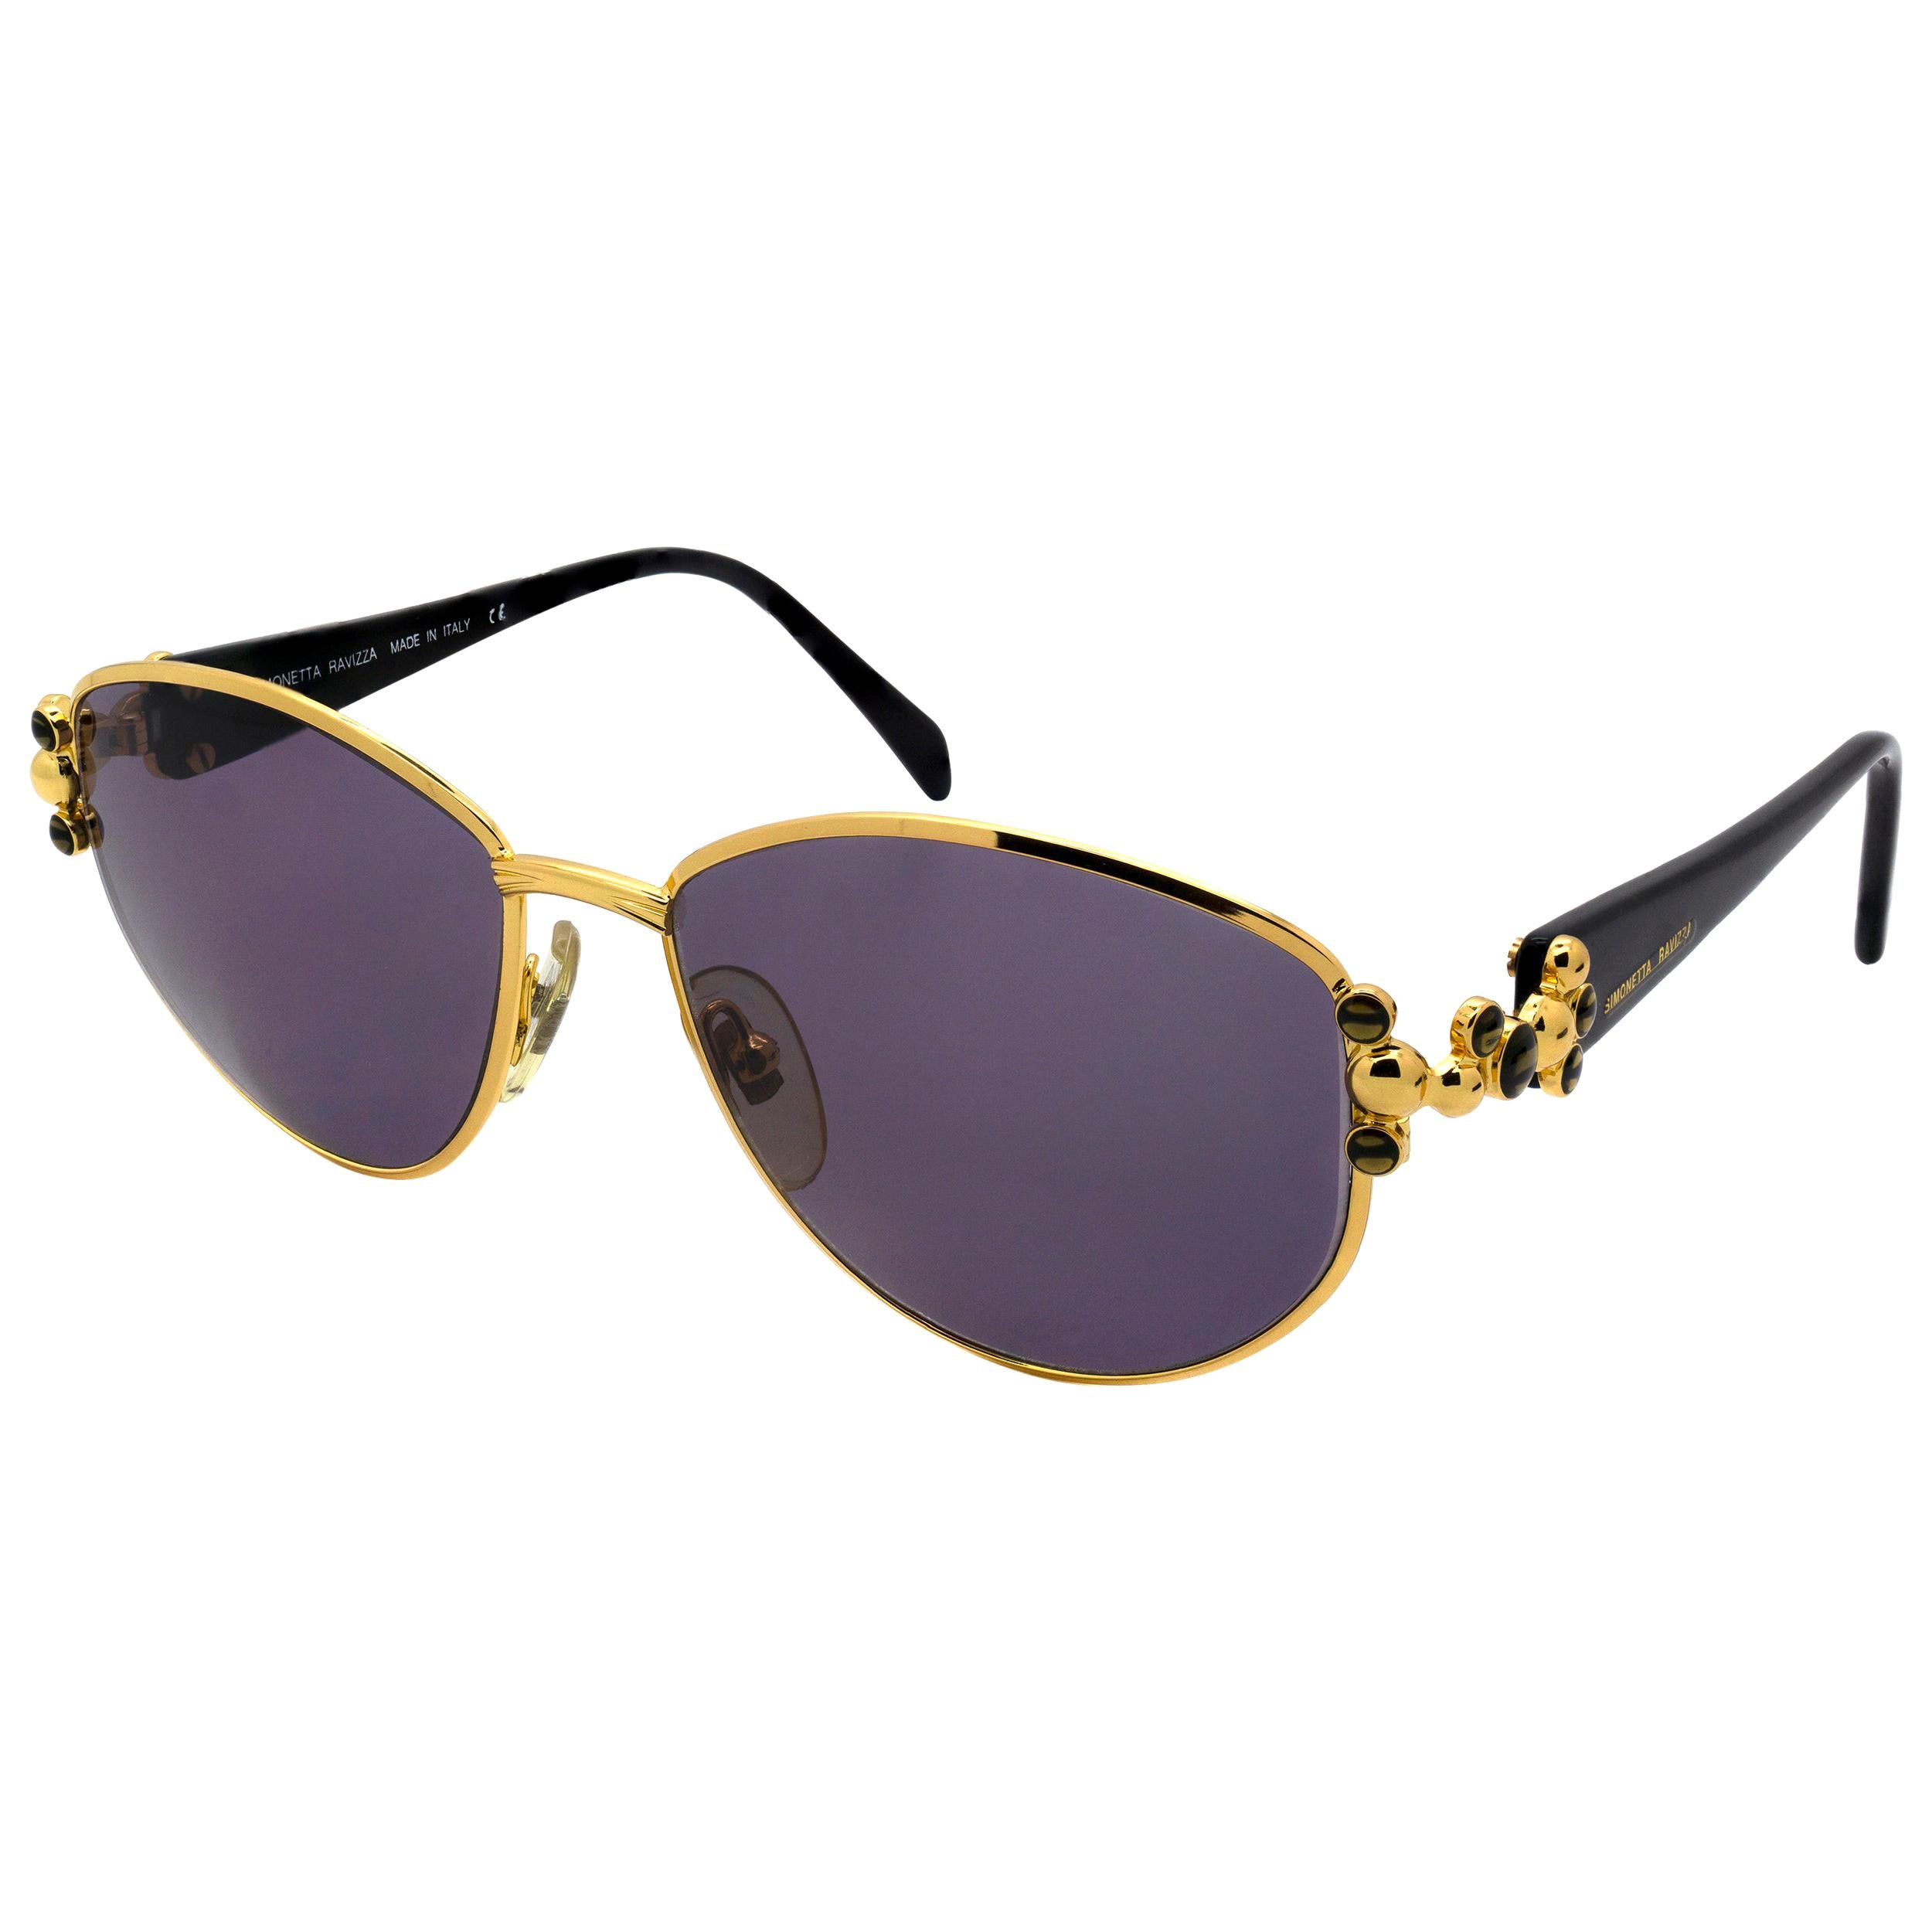 Simonetta Ravizza Vintage Sunglasses